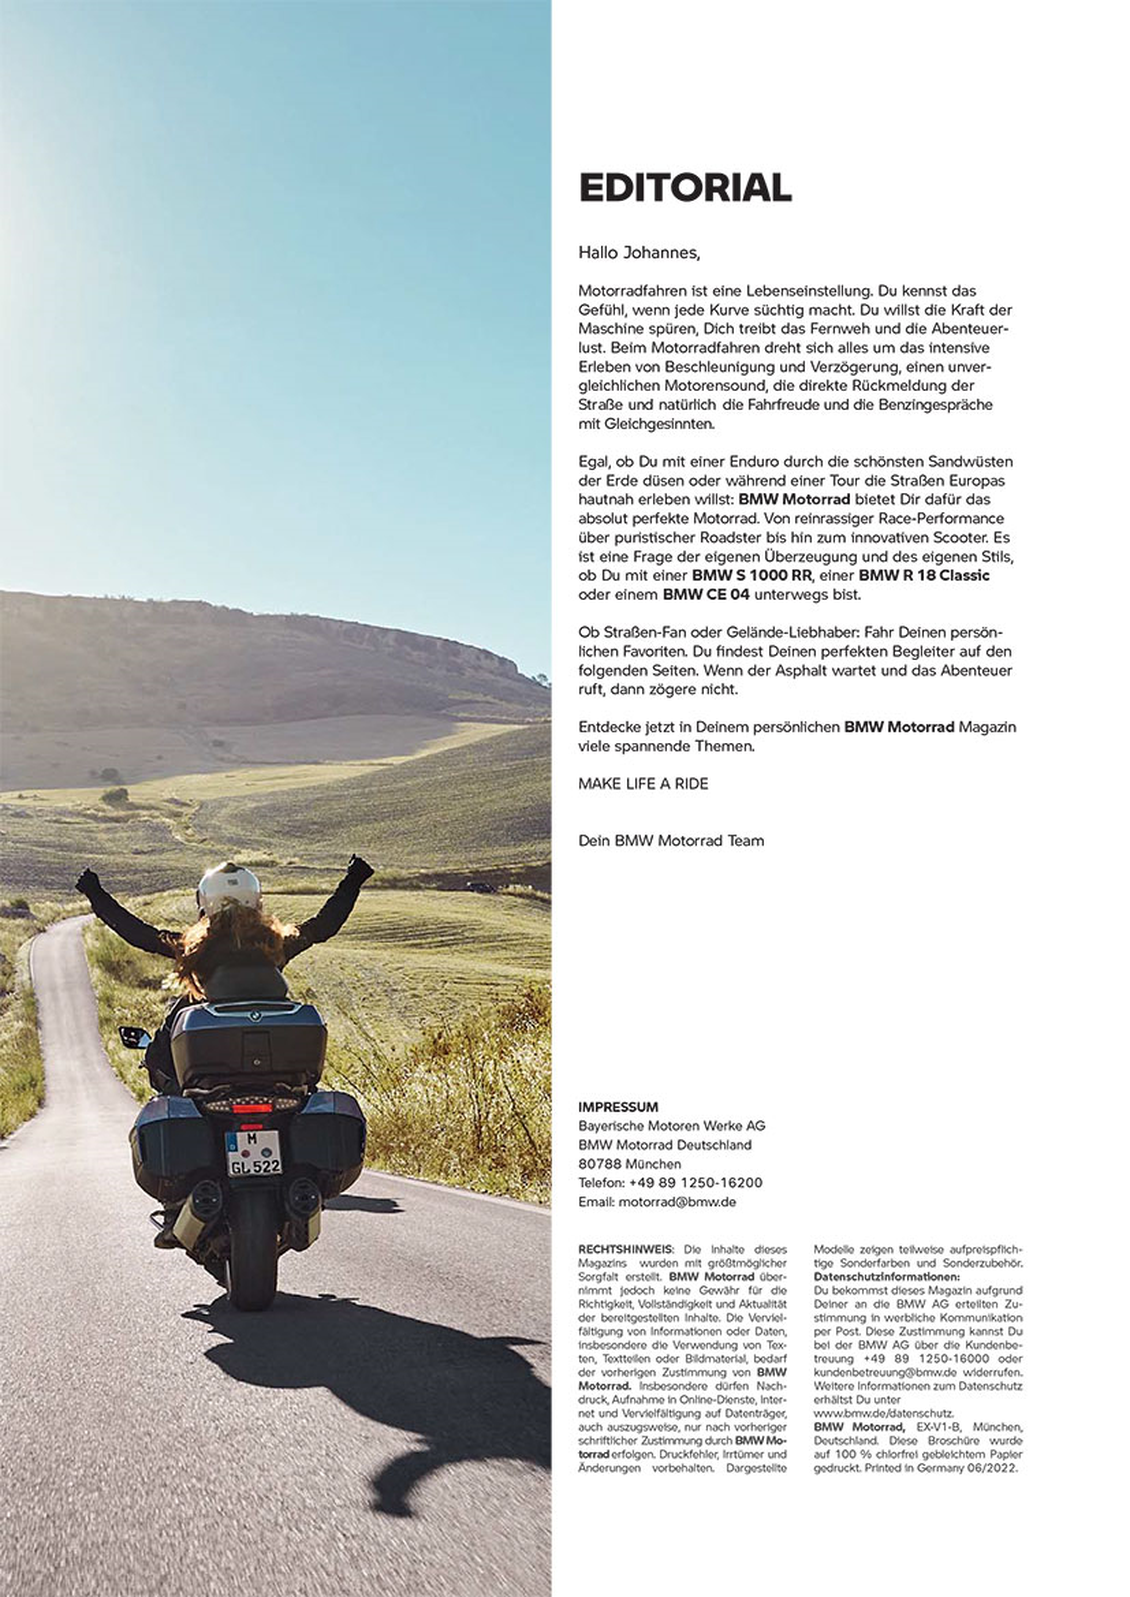 Persönliche Anrede und passgenauer Content im Editorial. (Bild: BMW_MOTORRAD)